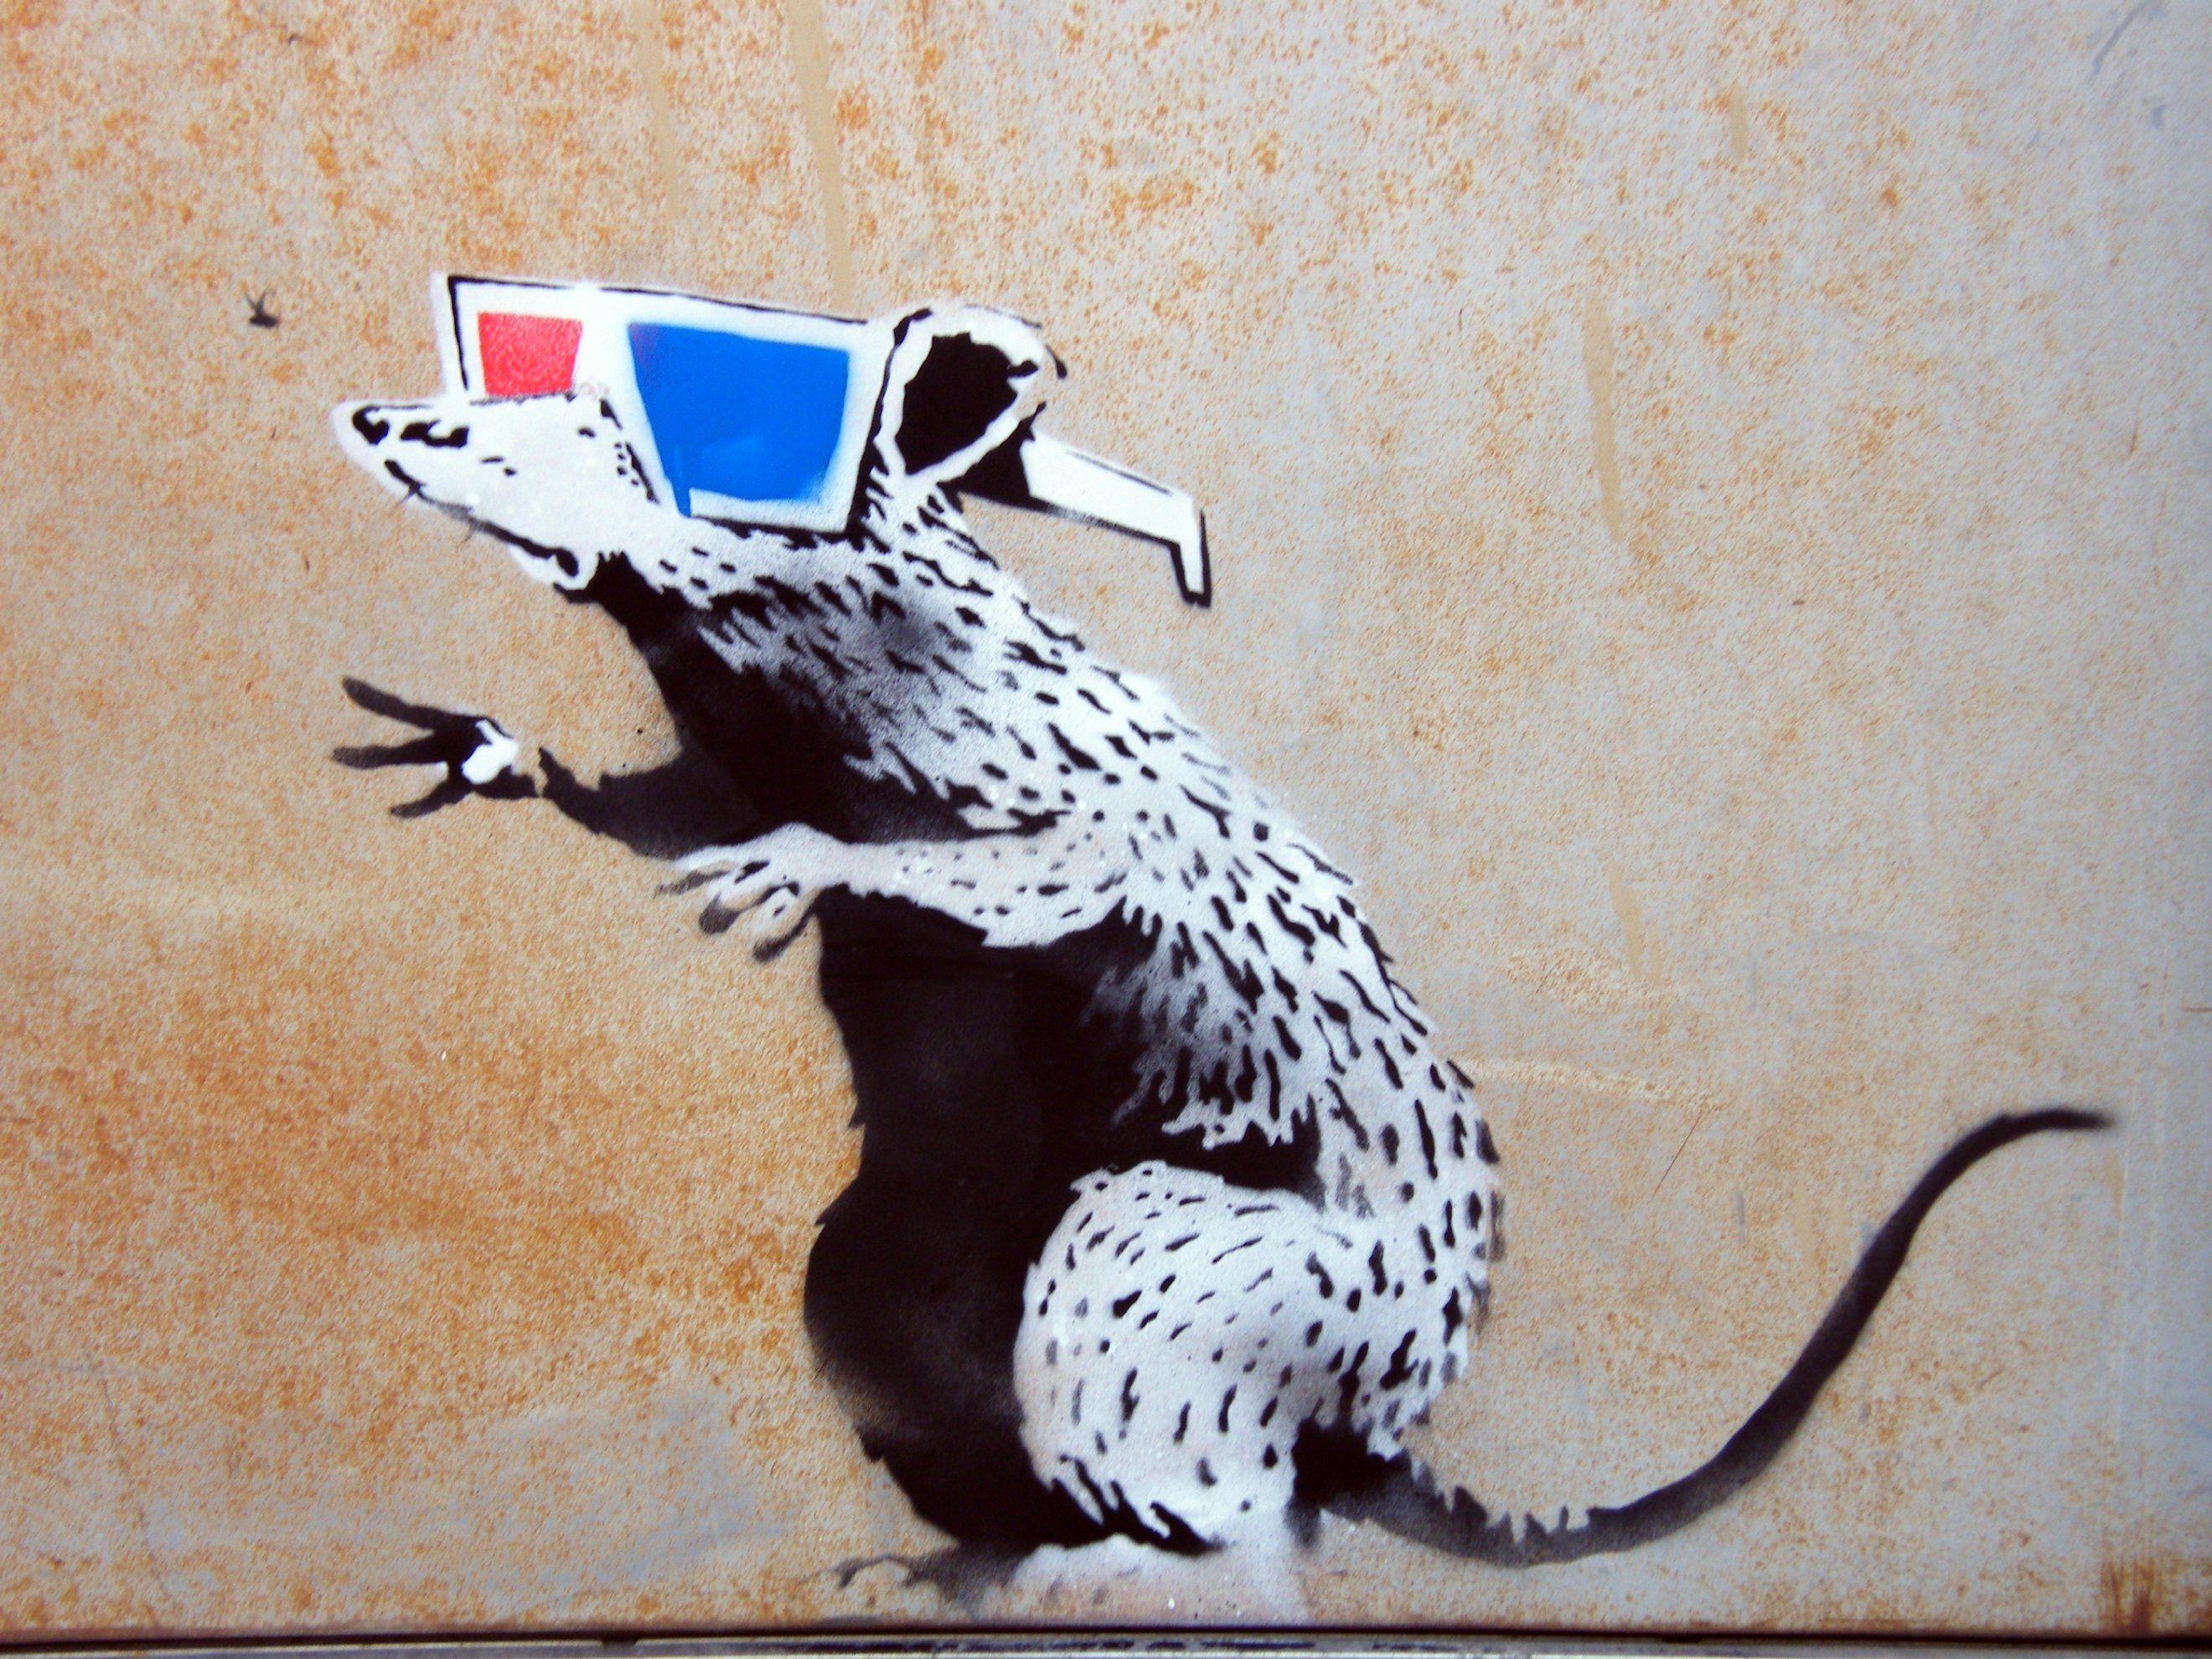 Banksy, street art Wallpaper / WallpaperJam.com